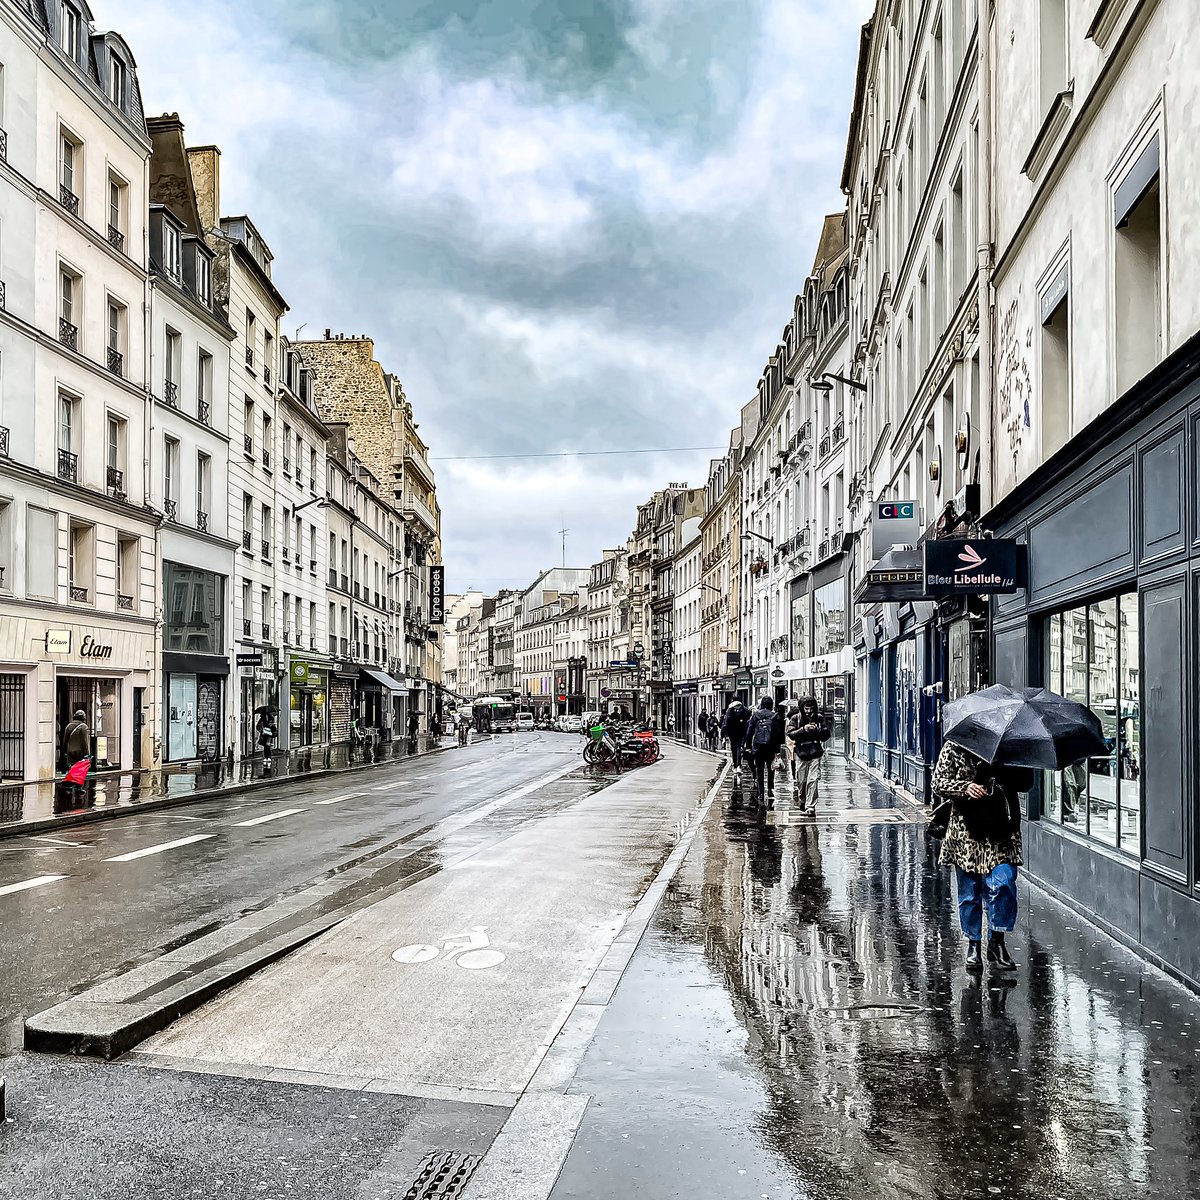 Rue du Faubourg Saint Antoine - Paris 11 / 12

#parisladouce #paris #pariscartepostale #parisjetaime #pariscityguide #paris11 #paris12  #thisisparis #visitparisregion #patrimoine #architecture #streetofparis #bastille #faubourgsaintantoine #parispatrimoine